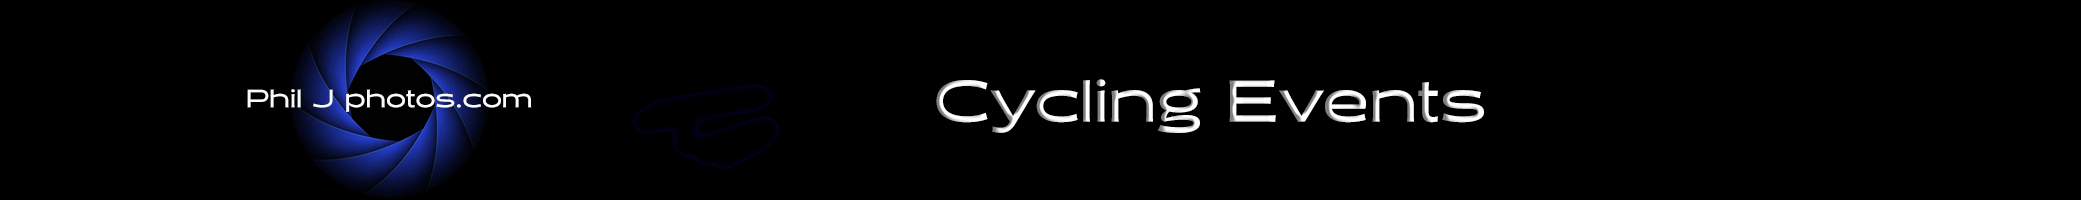 Cycling Events 26april copy